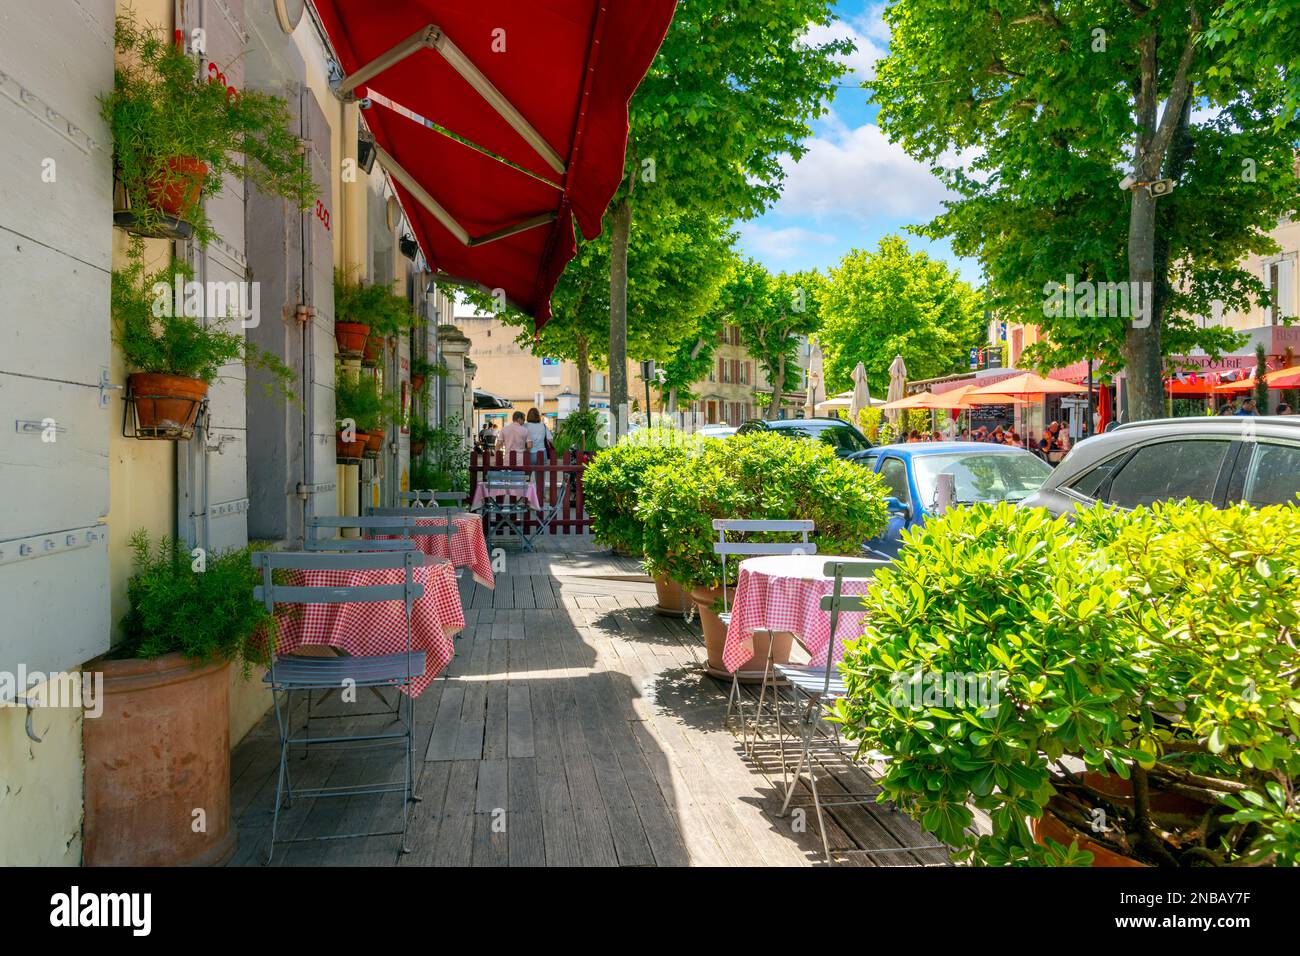 Un caffè marciapiede nella storica città medievale di Saint-Remy-de-Provence, Francia, una pittoresca città nella regione Provenza-Alpi. Foto Stock